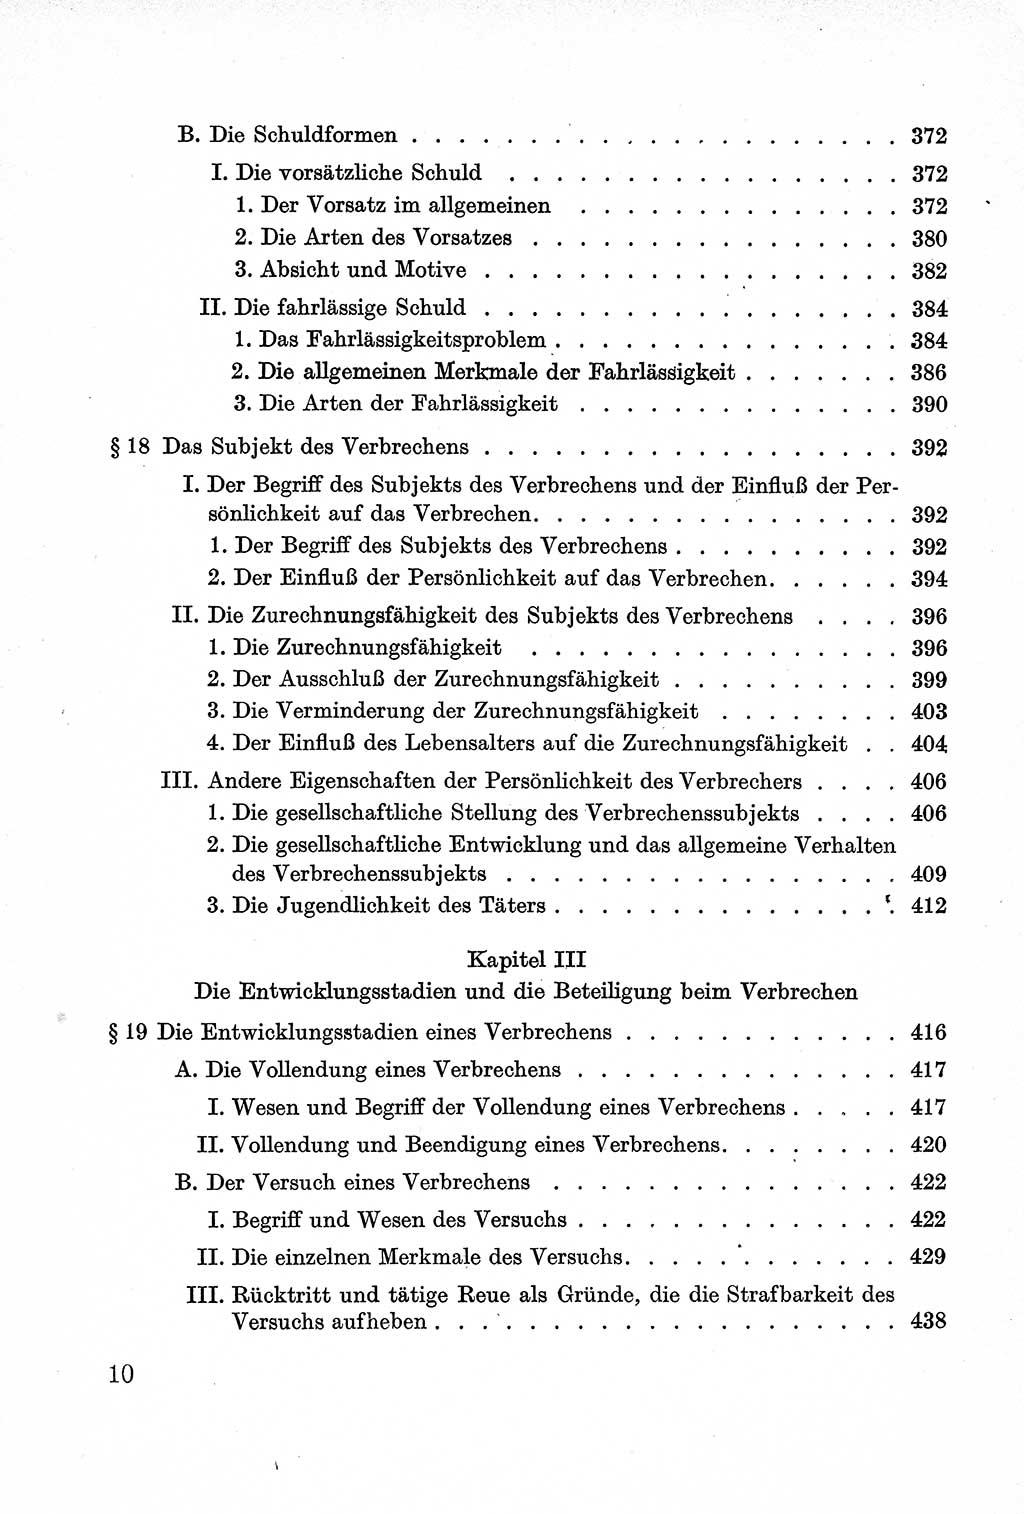 Lehrbuch des Strafrechts der Deutschen Demokratischen Republik (DDR), Allgemeiner Teil 1957, Seite 10 (Lb. Strafr. DDR AT 1957, S. 10)